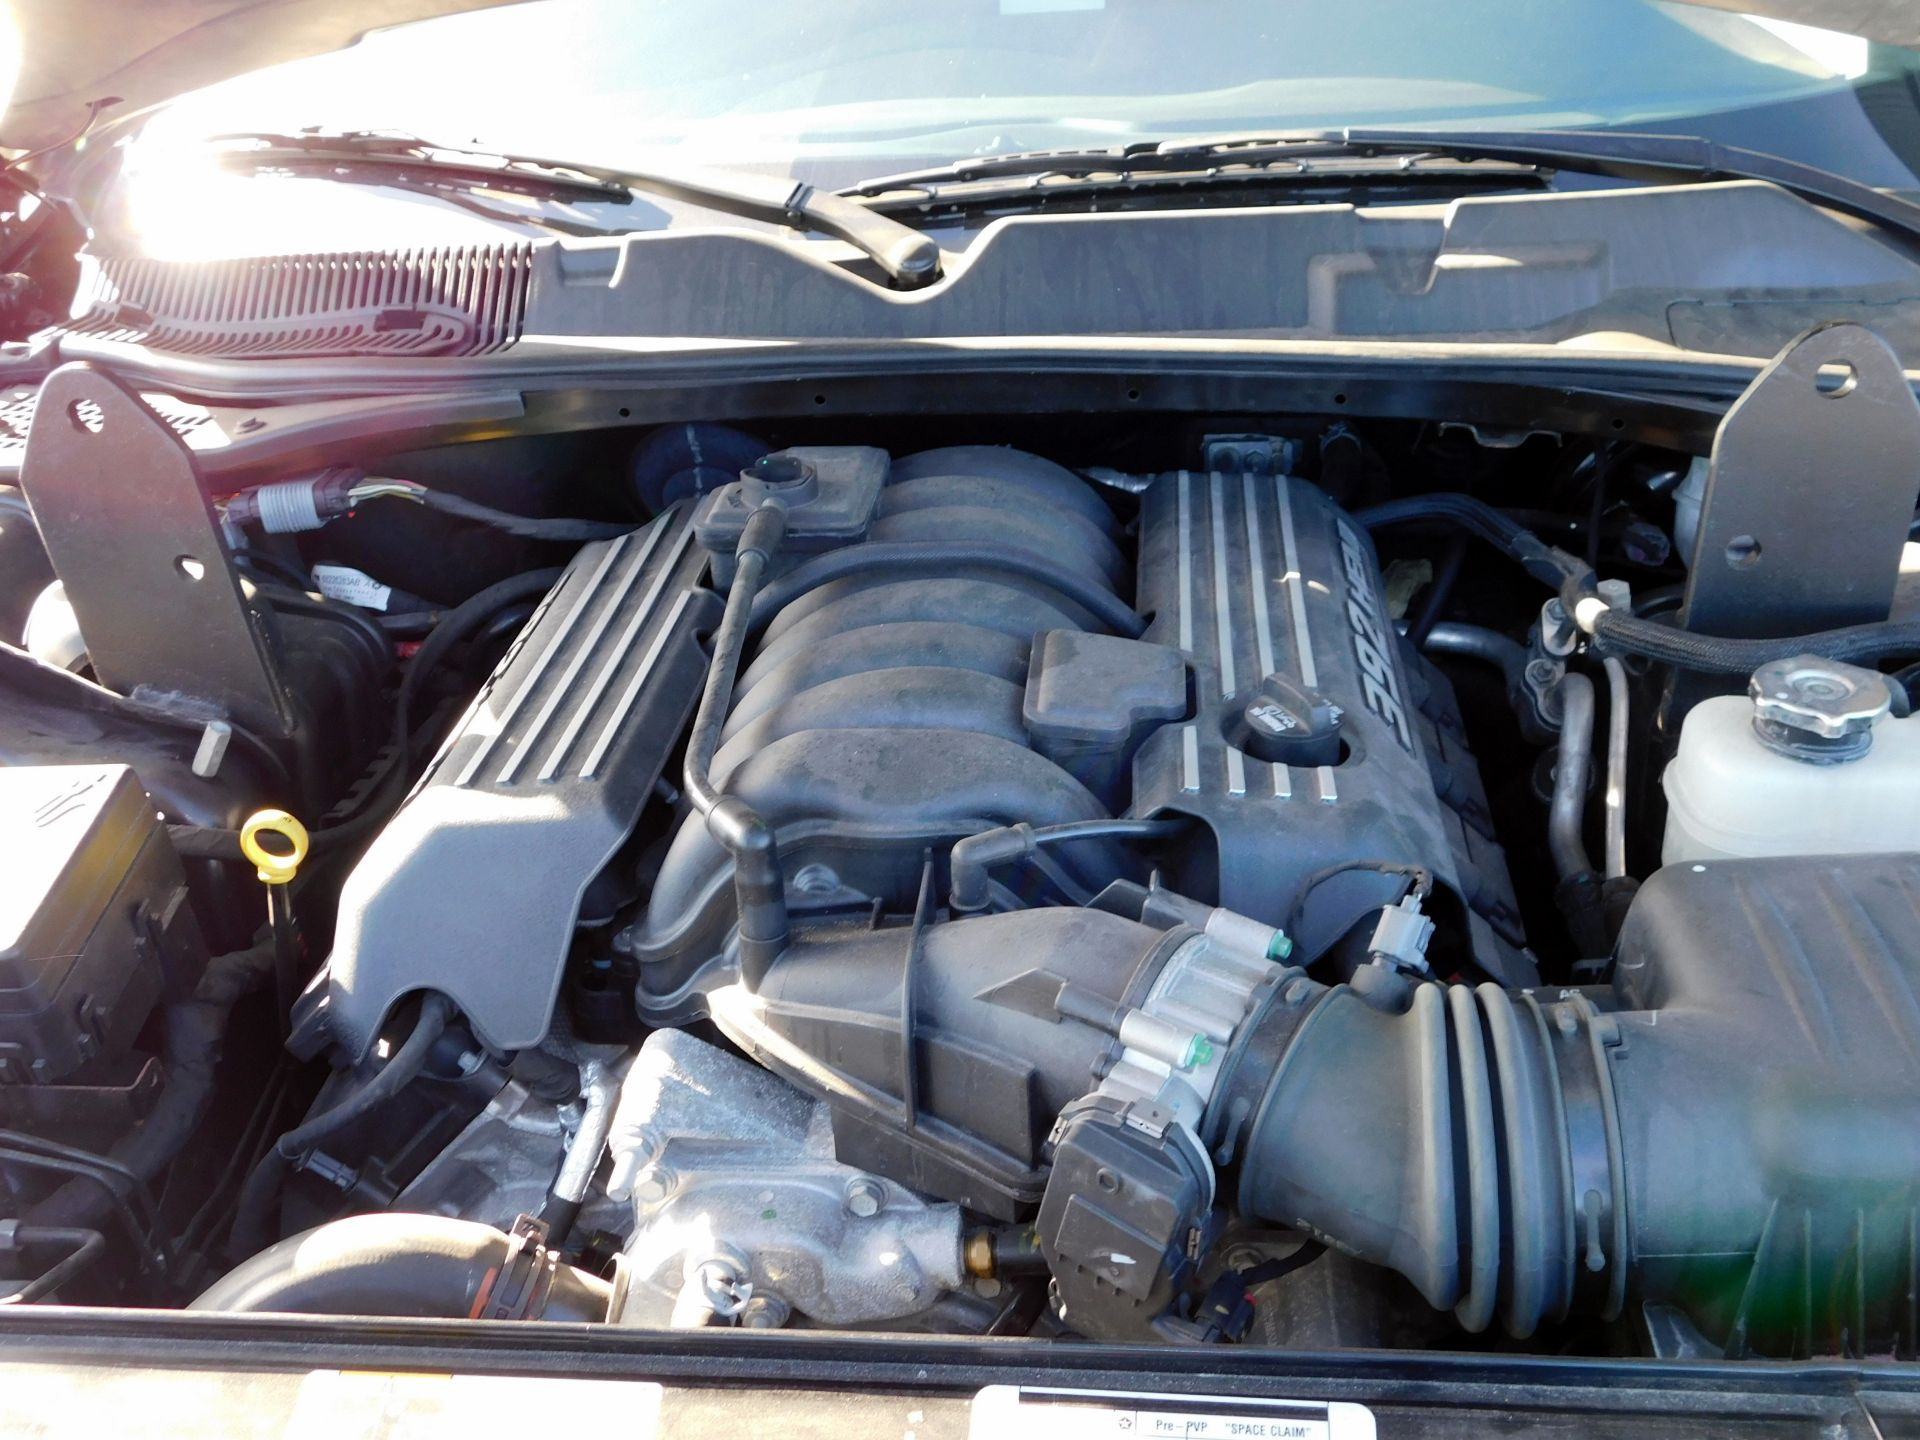 Dodge Challenger LHD SRT 2 Door Saloon, Replica of Michelle’s Car Seen in “Fast 7”*, Hemi 392 cu - Image 15 of 16